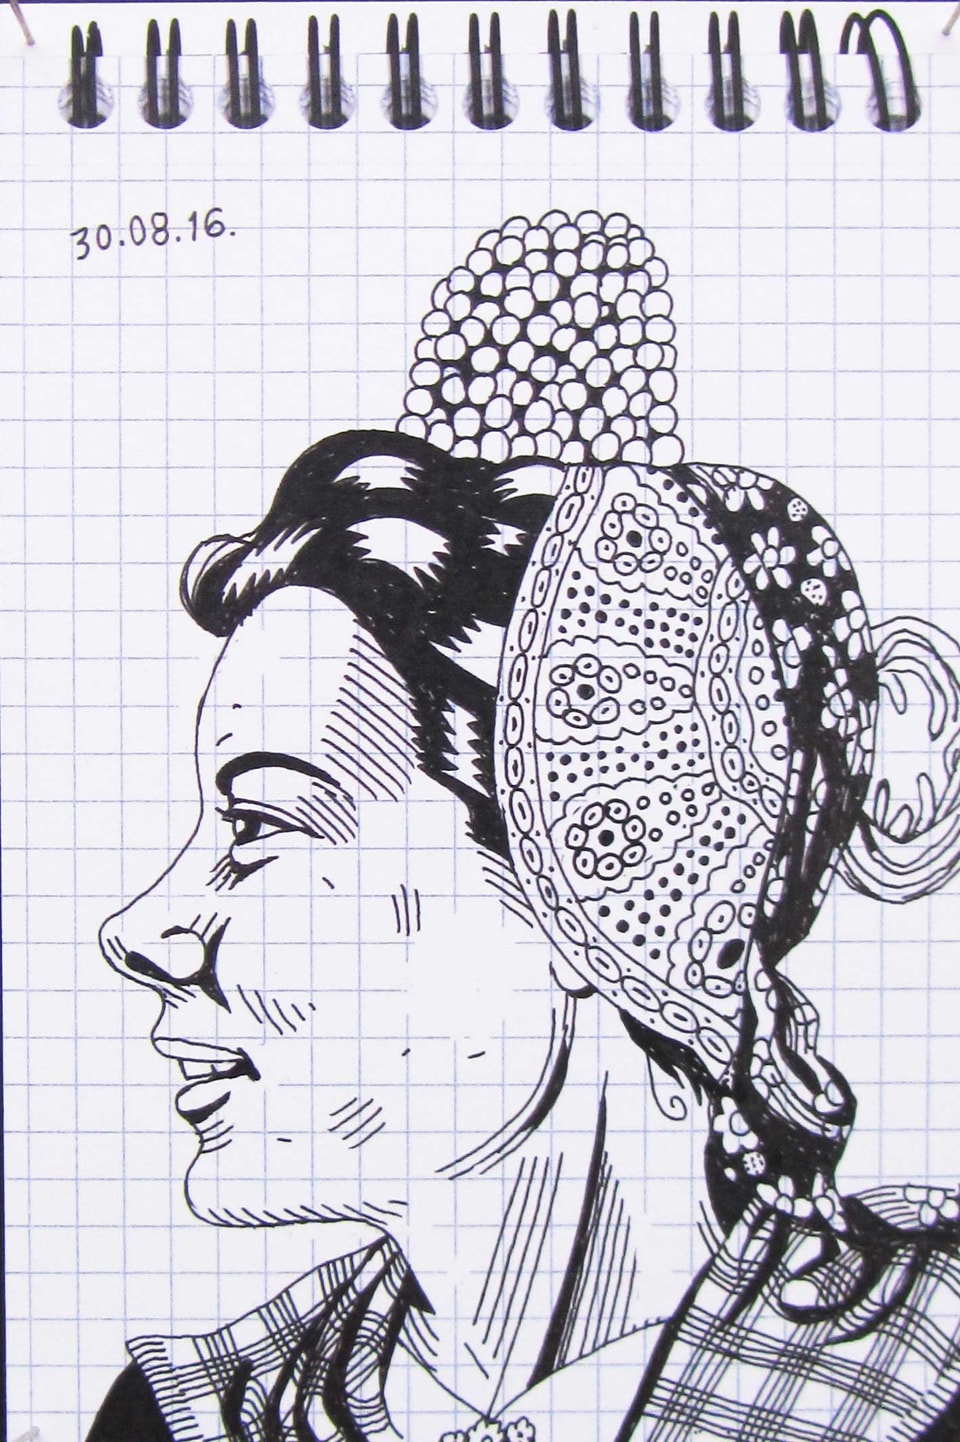 Tuschezeichnung einer Frau mit Kopfbedeckung.